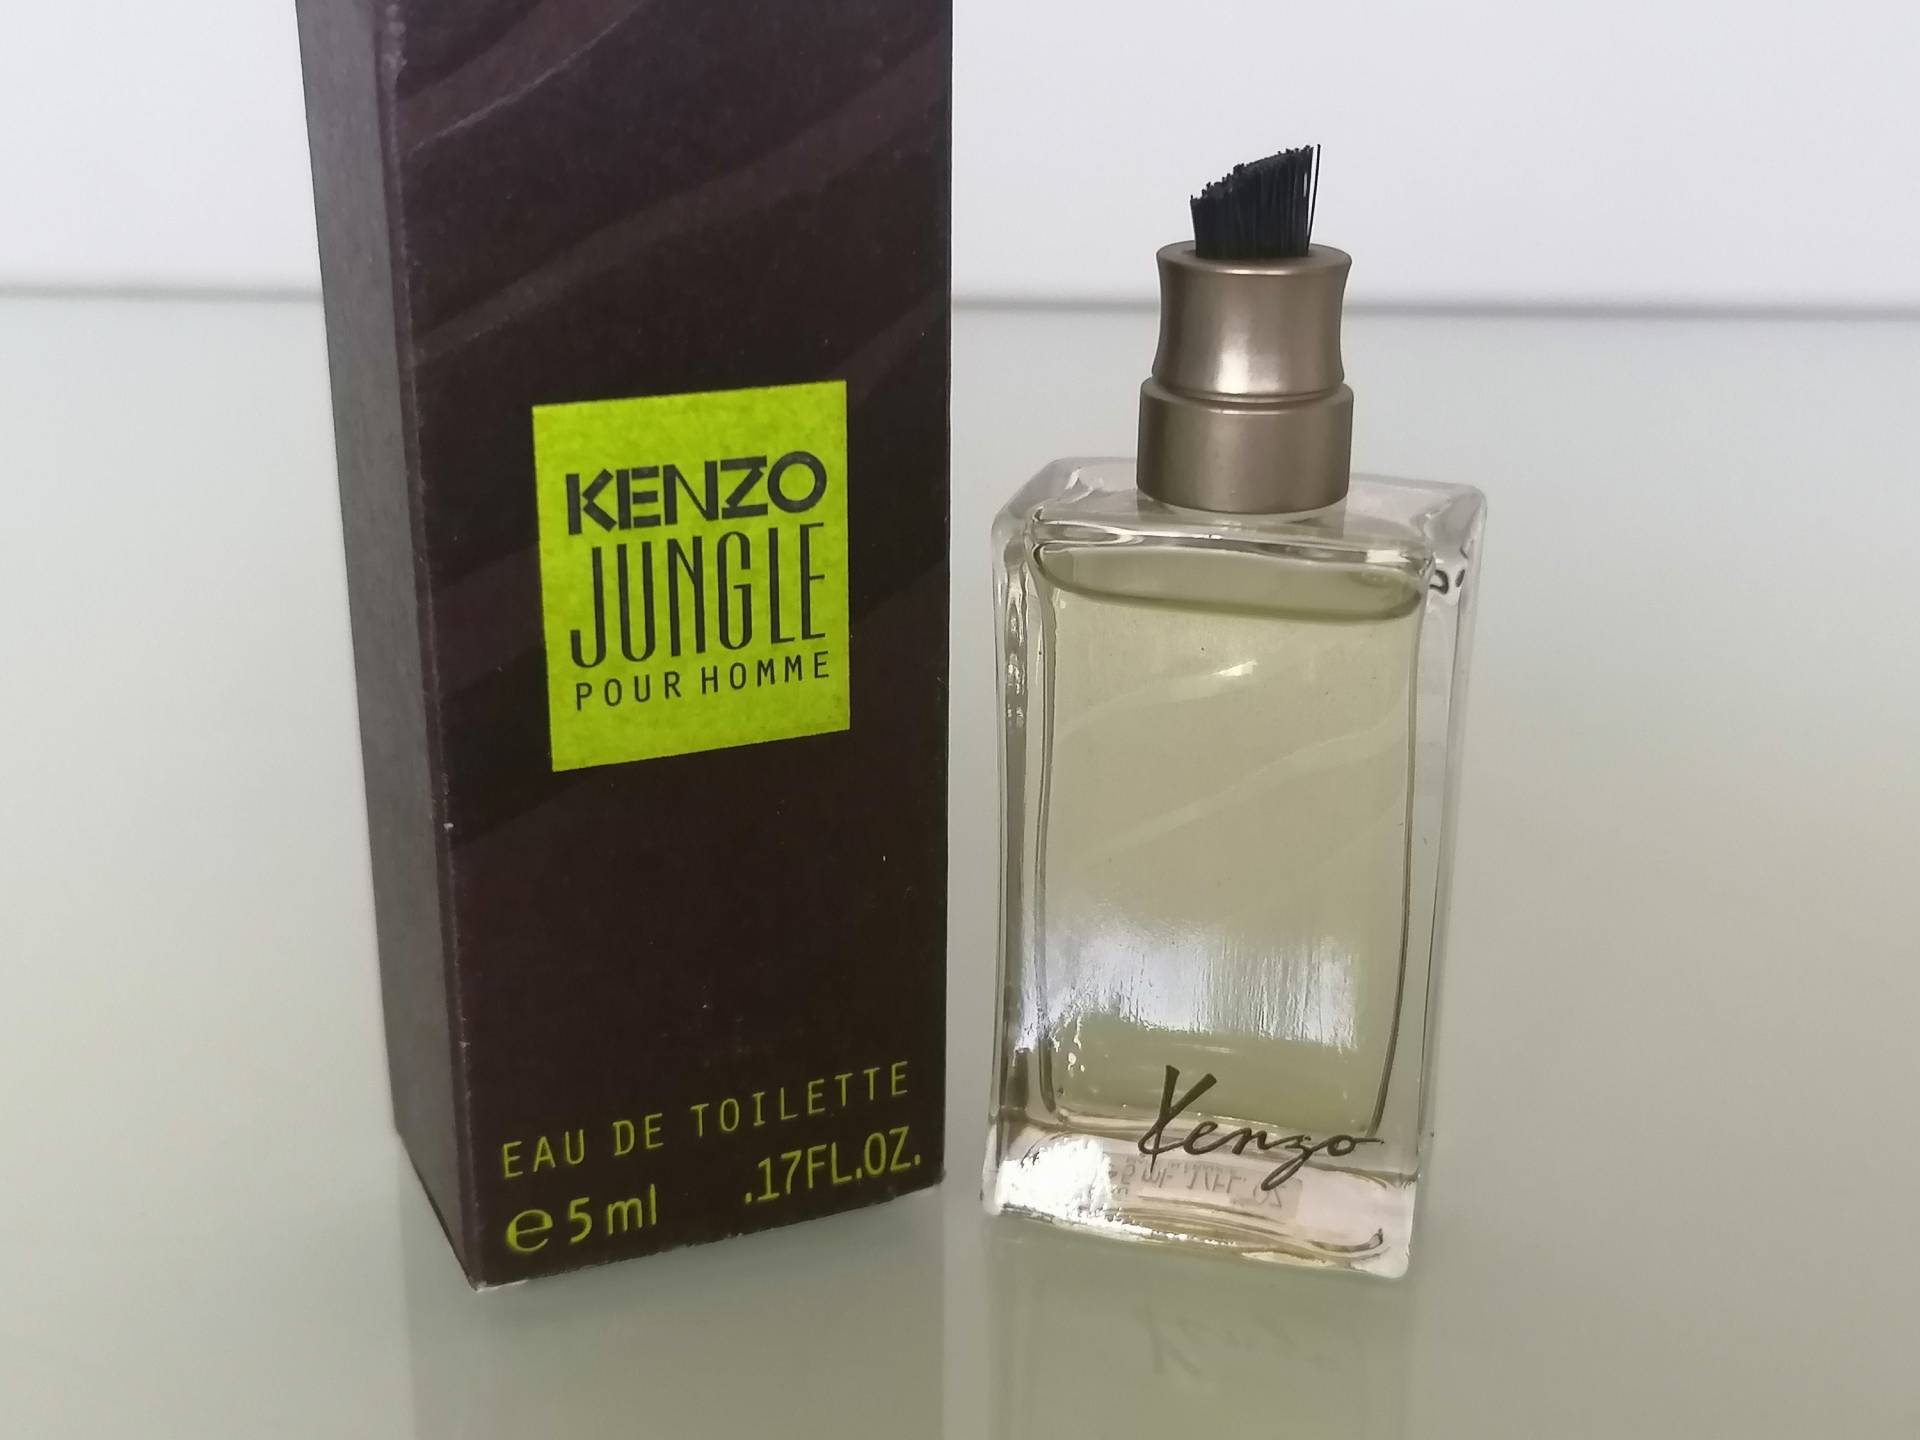 Miniatur Kenzo Jungle Pour Homme | 1998 Eau De Toilette 5 Ml/0, 17 Fl.oz Vintage Parfum Sample von Etsy - MyVintageGadgets